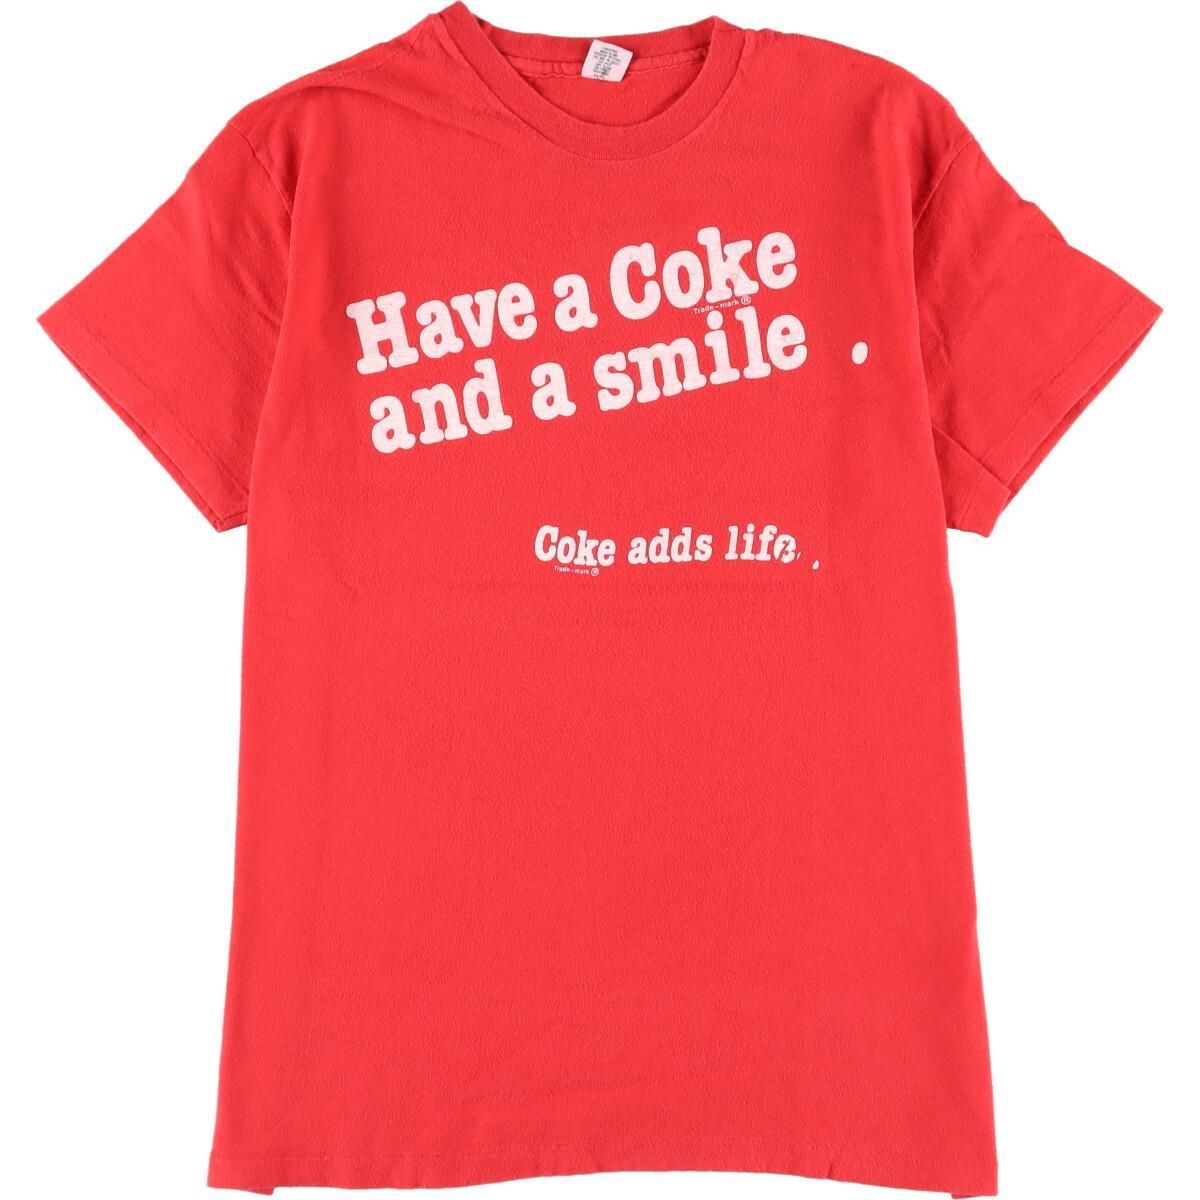 90年代 COKE COCA-COLA コカコーラ ポーラテック アドバタイジングTシャツ USA製 メンズM ヴィンテージ /eaa359804USA製年代